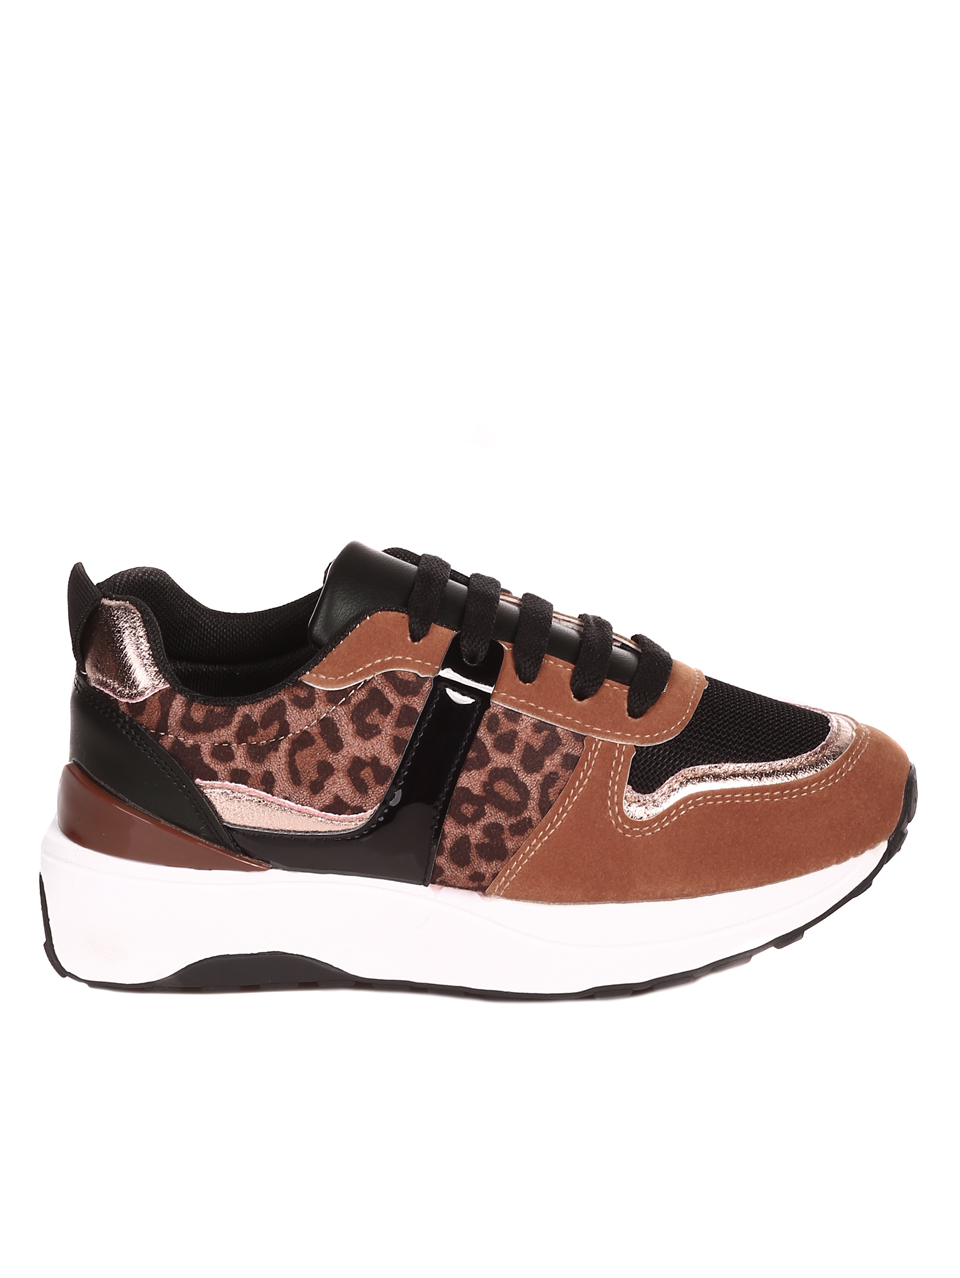 Ежедневни дамски обувки в кафяво 3U-22554 leopard